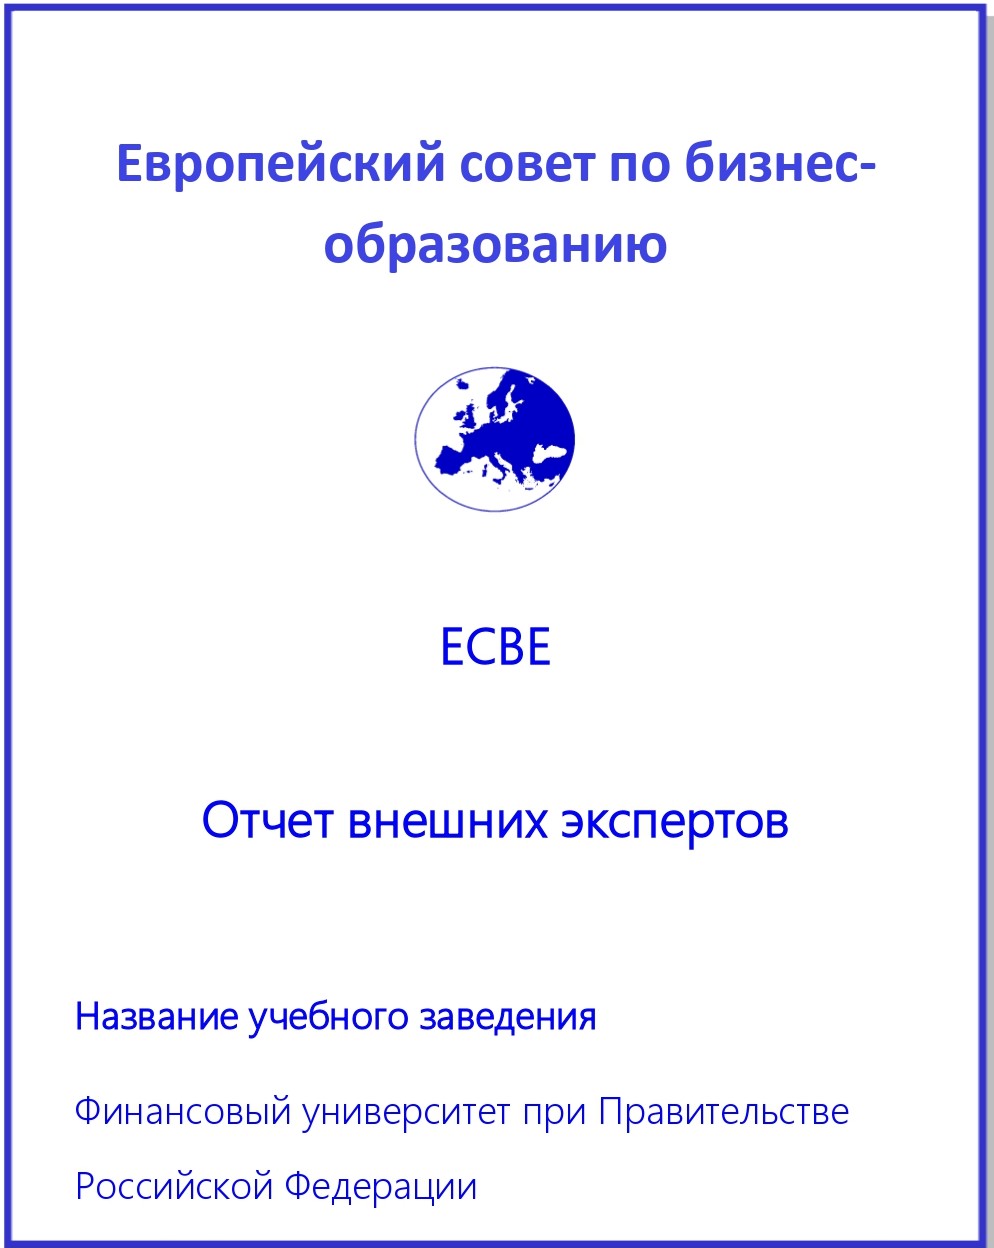 Отчет аккредитационной коммиссии ECBE - 1 лист.jpg